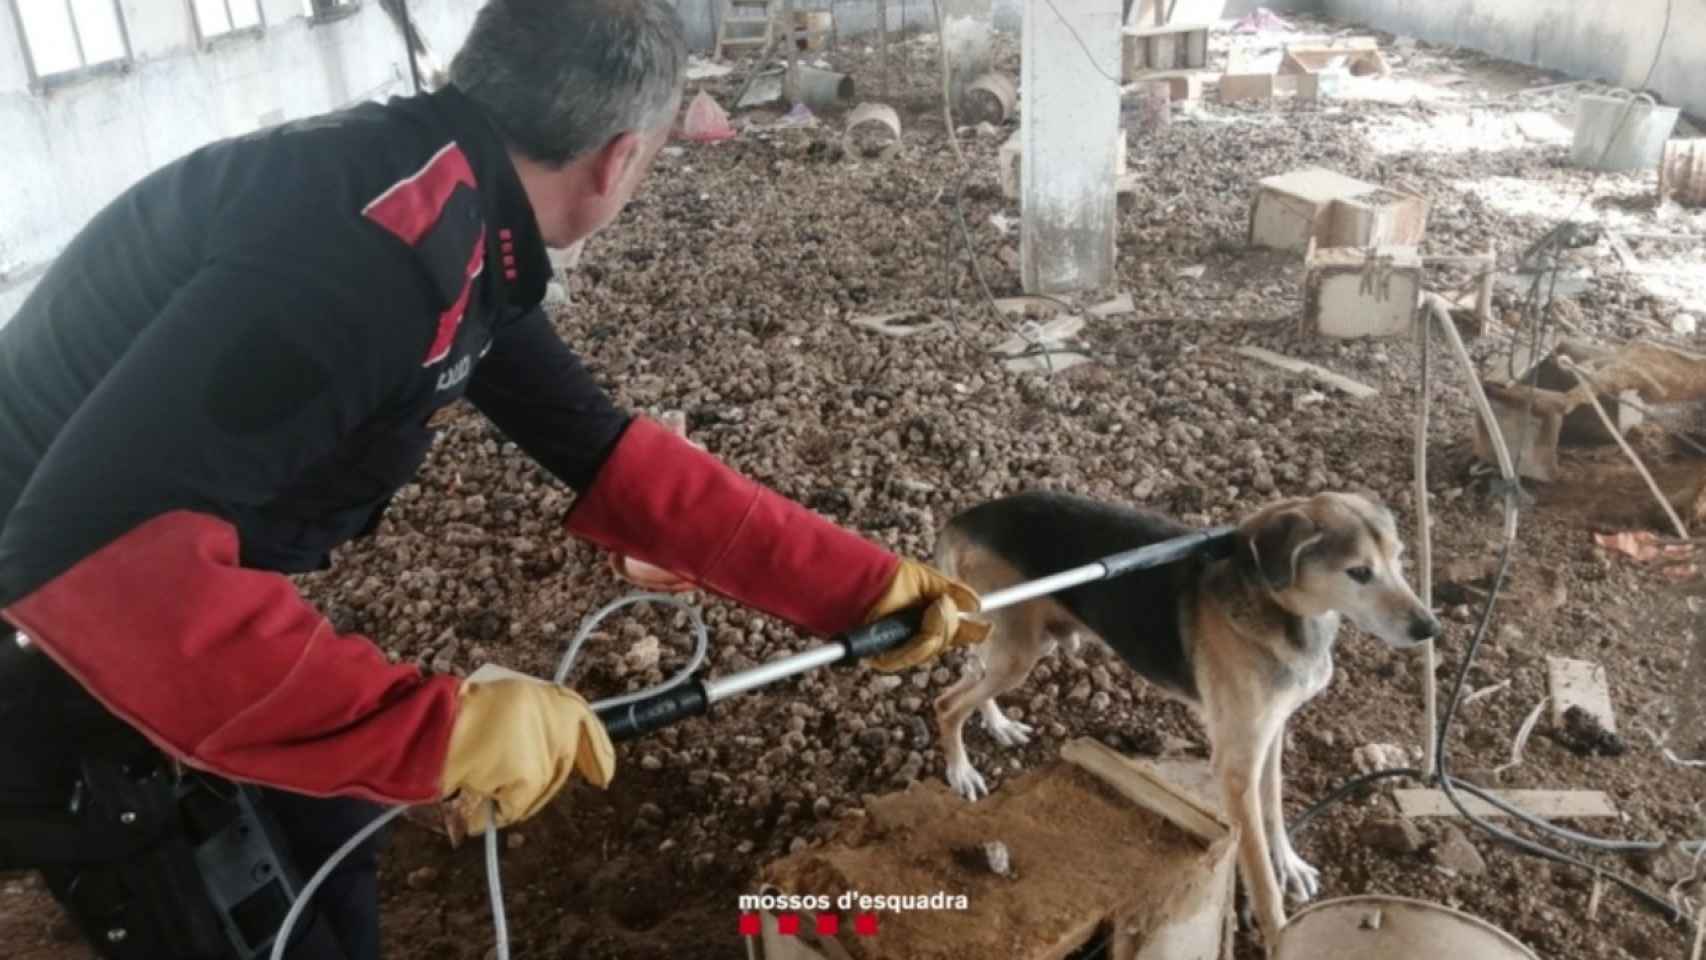 Denuncian al dueño de un perro por tenerlo malviviendo encerrado en una finca en Xerta (Tarragona) / MOSSOS